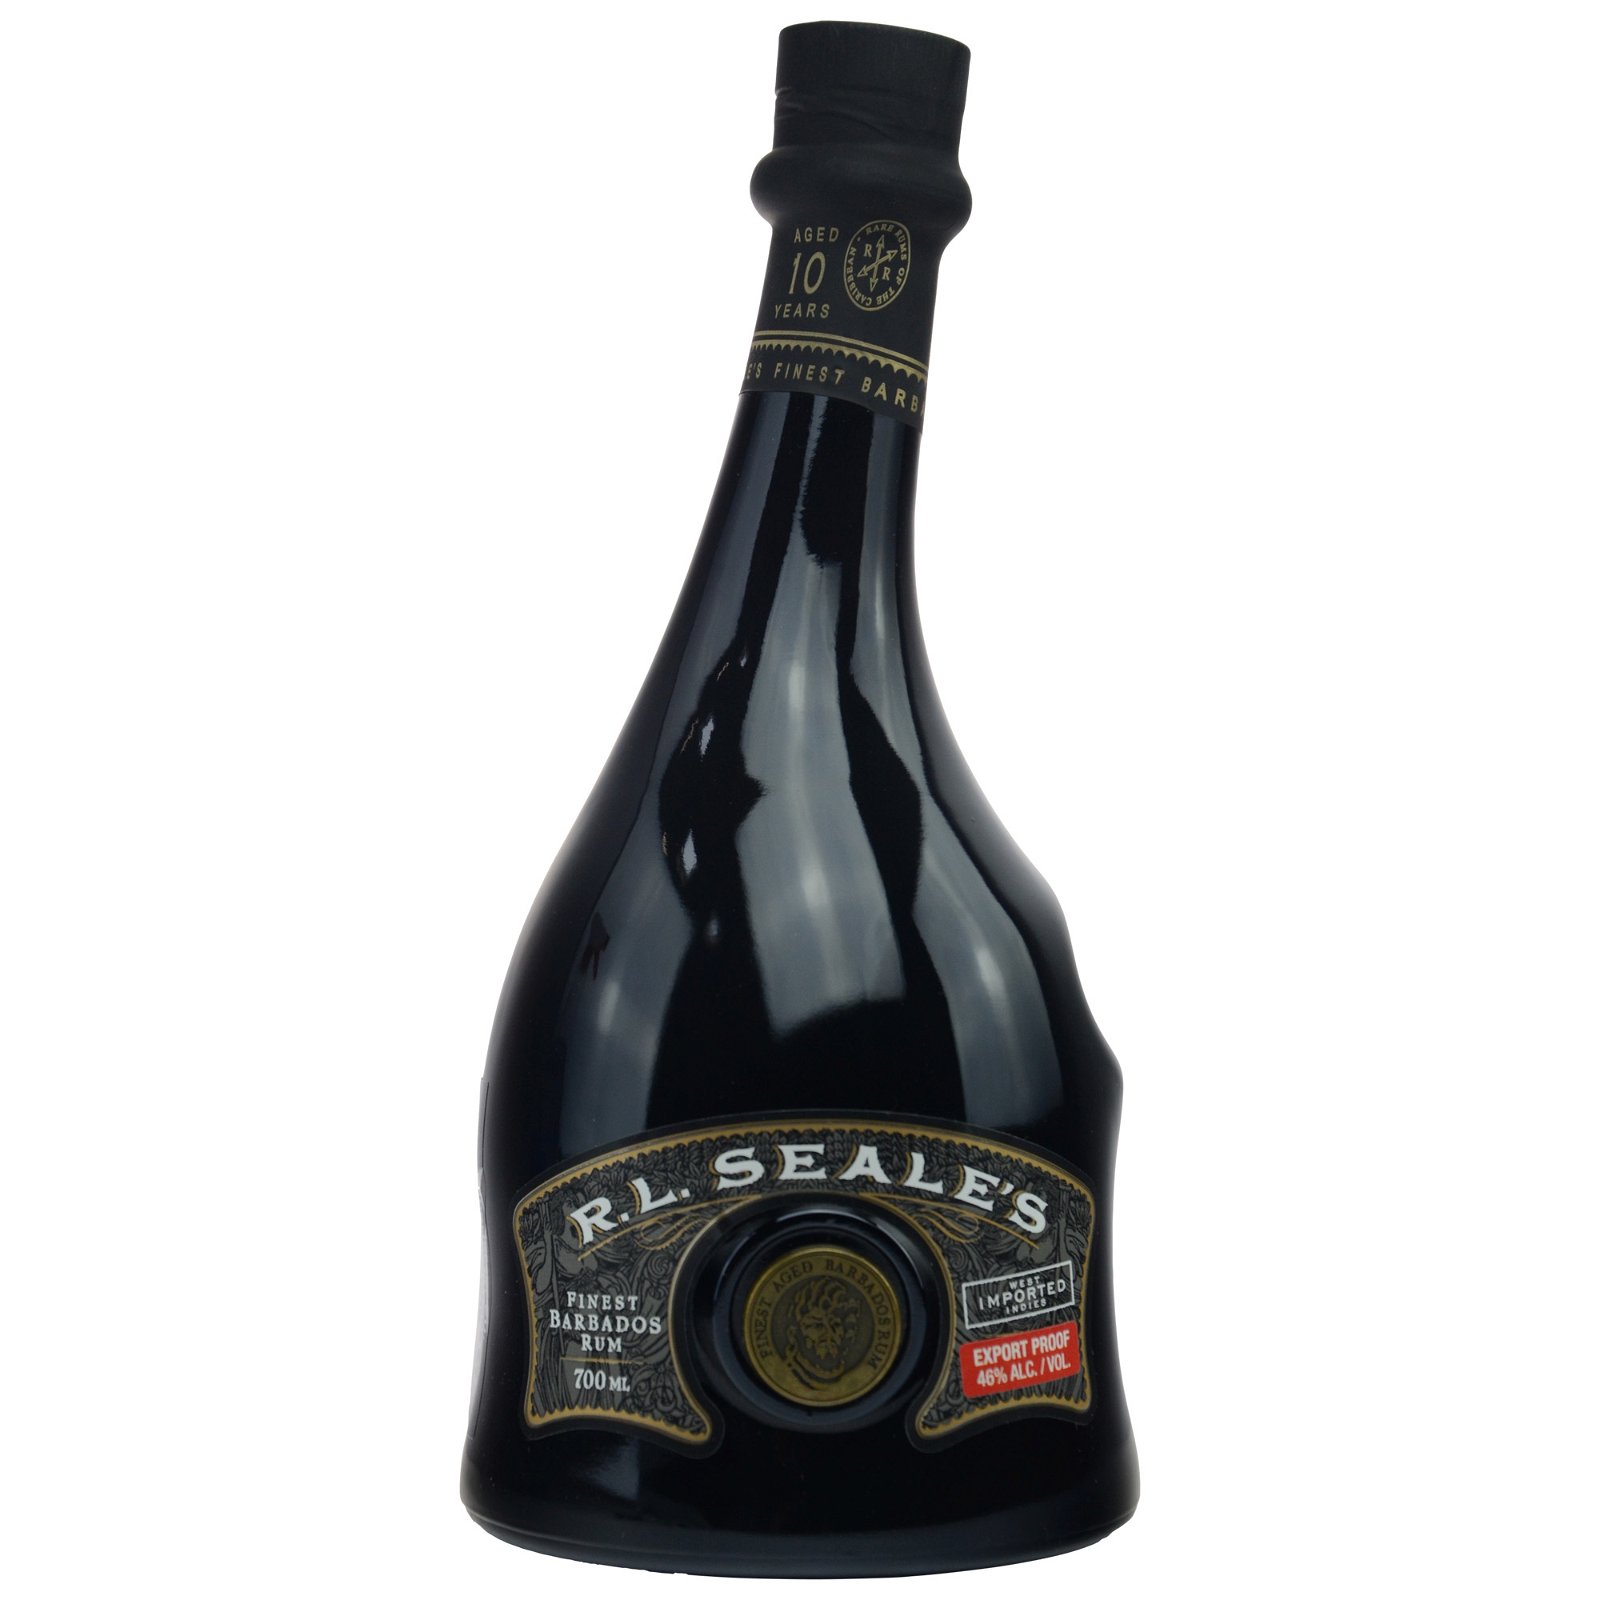 R.L. Seales 10 Jahre Finest Barbados Rum